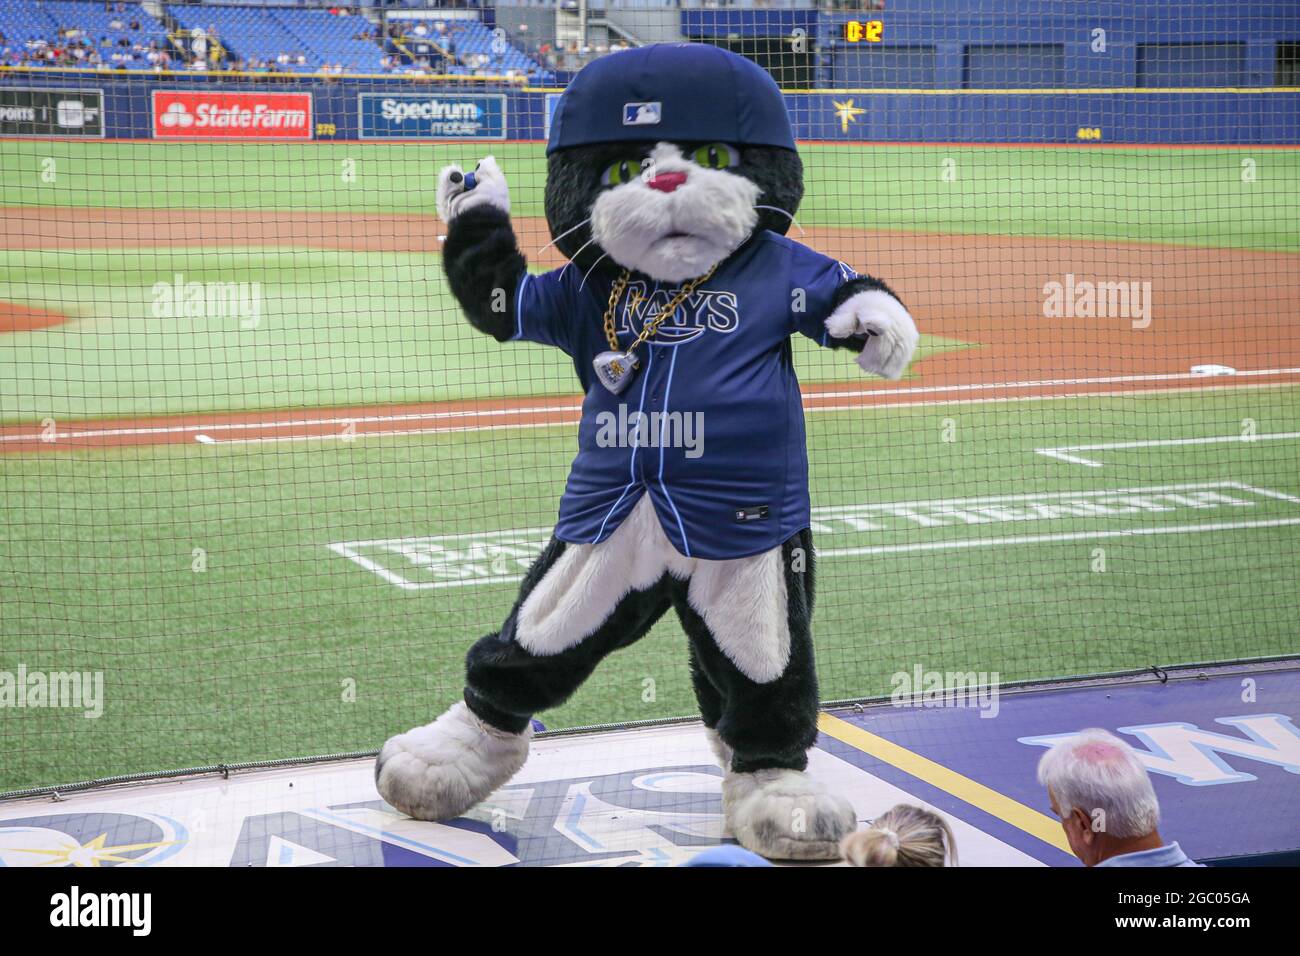 St. Petersburg, FL. USA; Tampa Bay Rays mascot D.J. Kitty